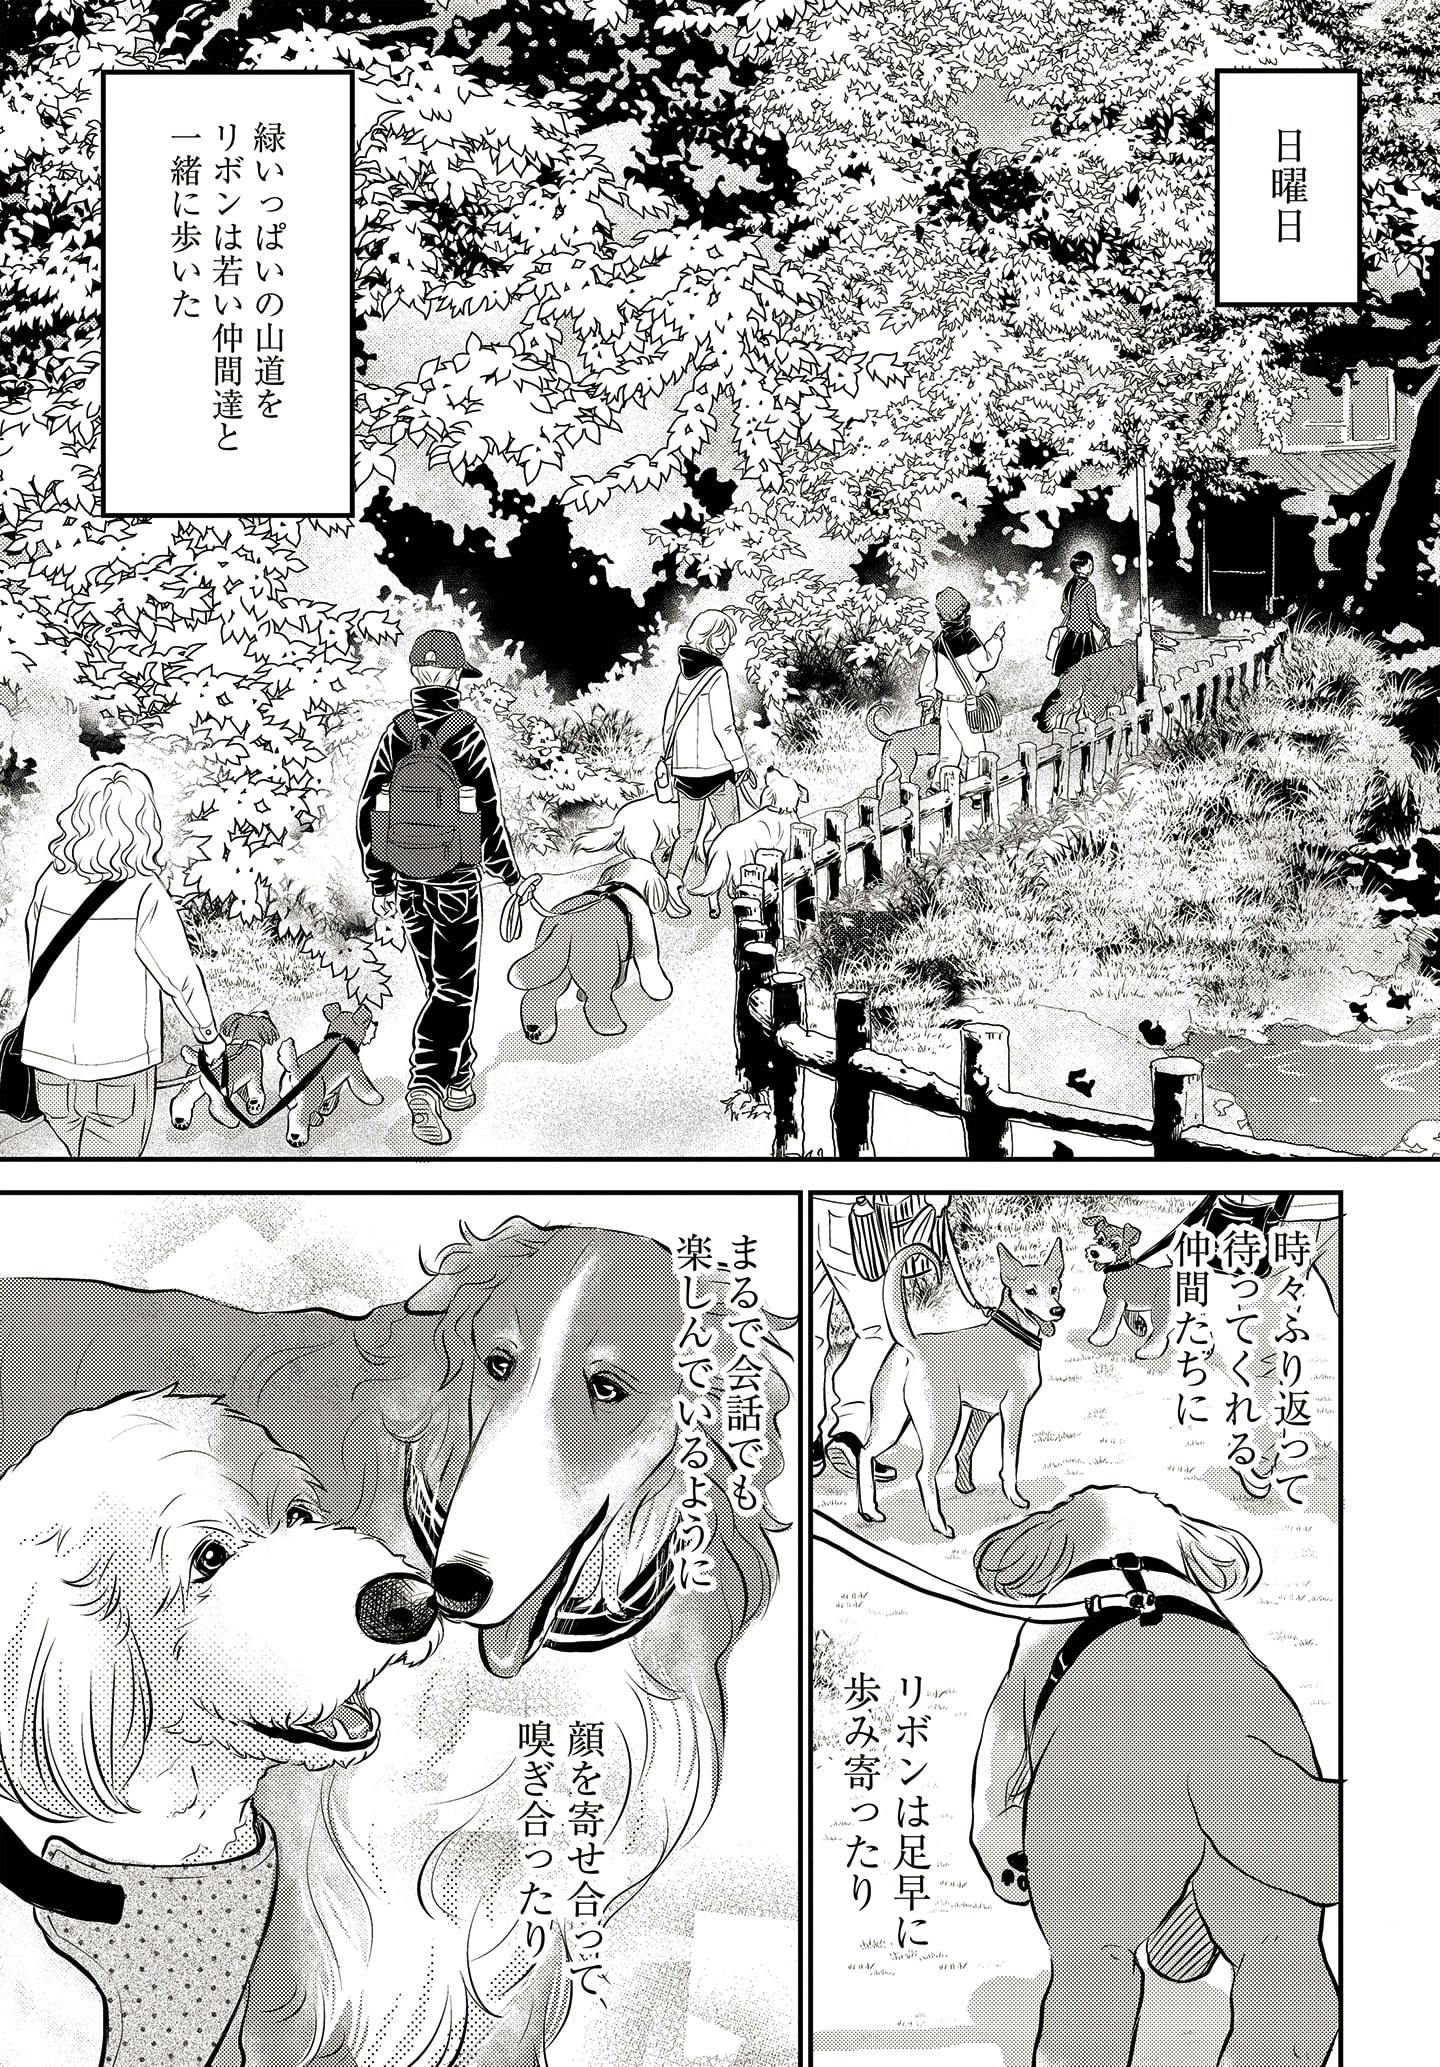 ドッグトレーニング漫画『DOG SIGNAL』34話目　2/4